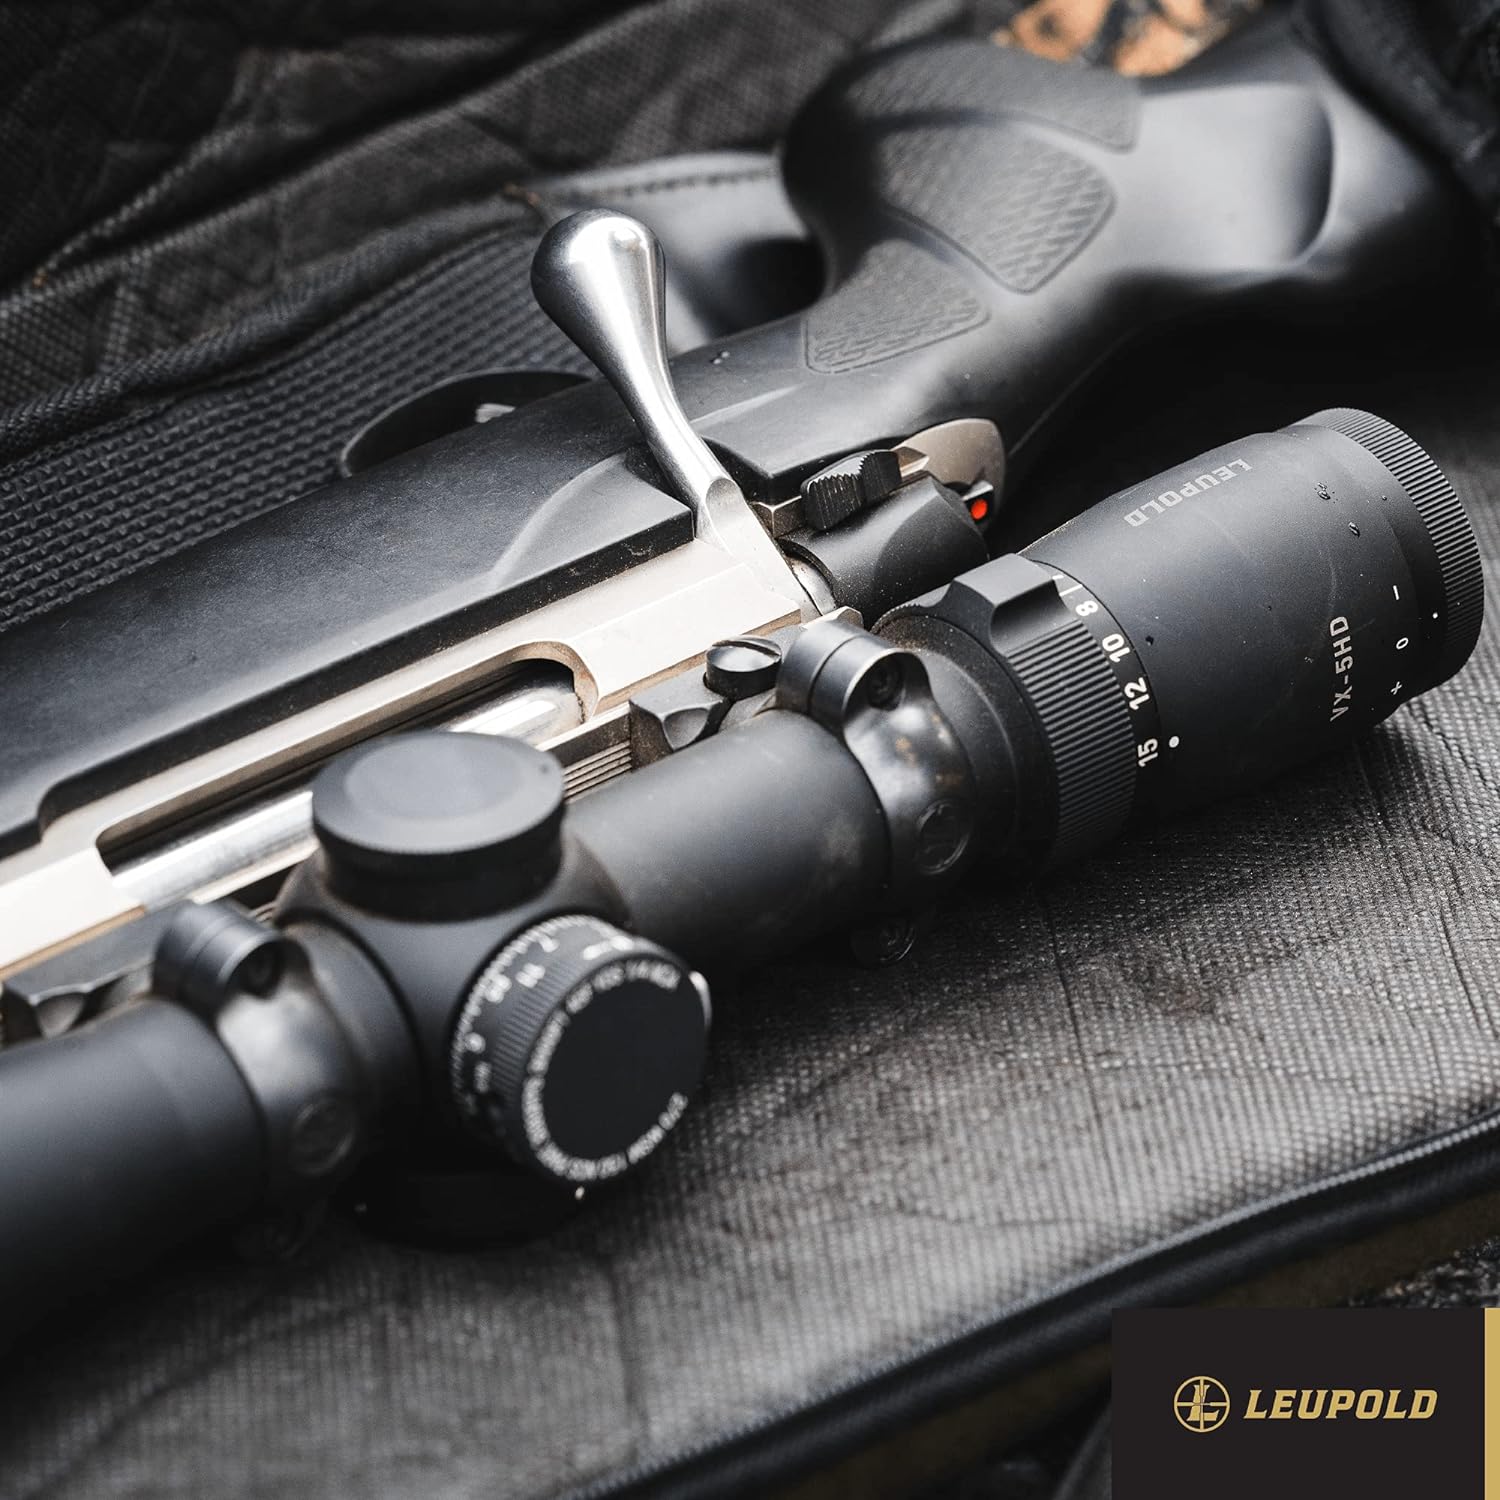 Leupold VX-5HD 1-5x24mm Riflescope - Leupold VX-5HD 1-5x24mm Riflescope Review